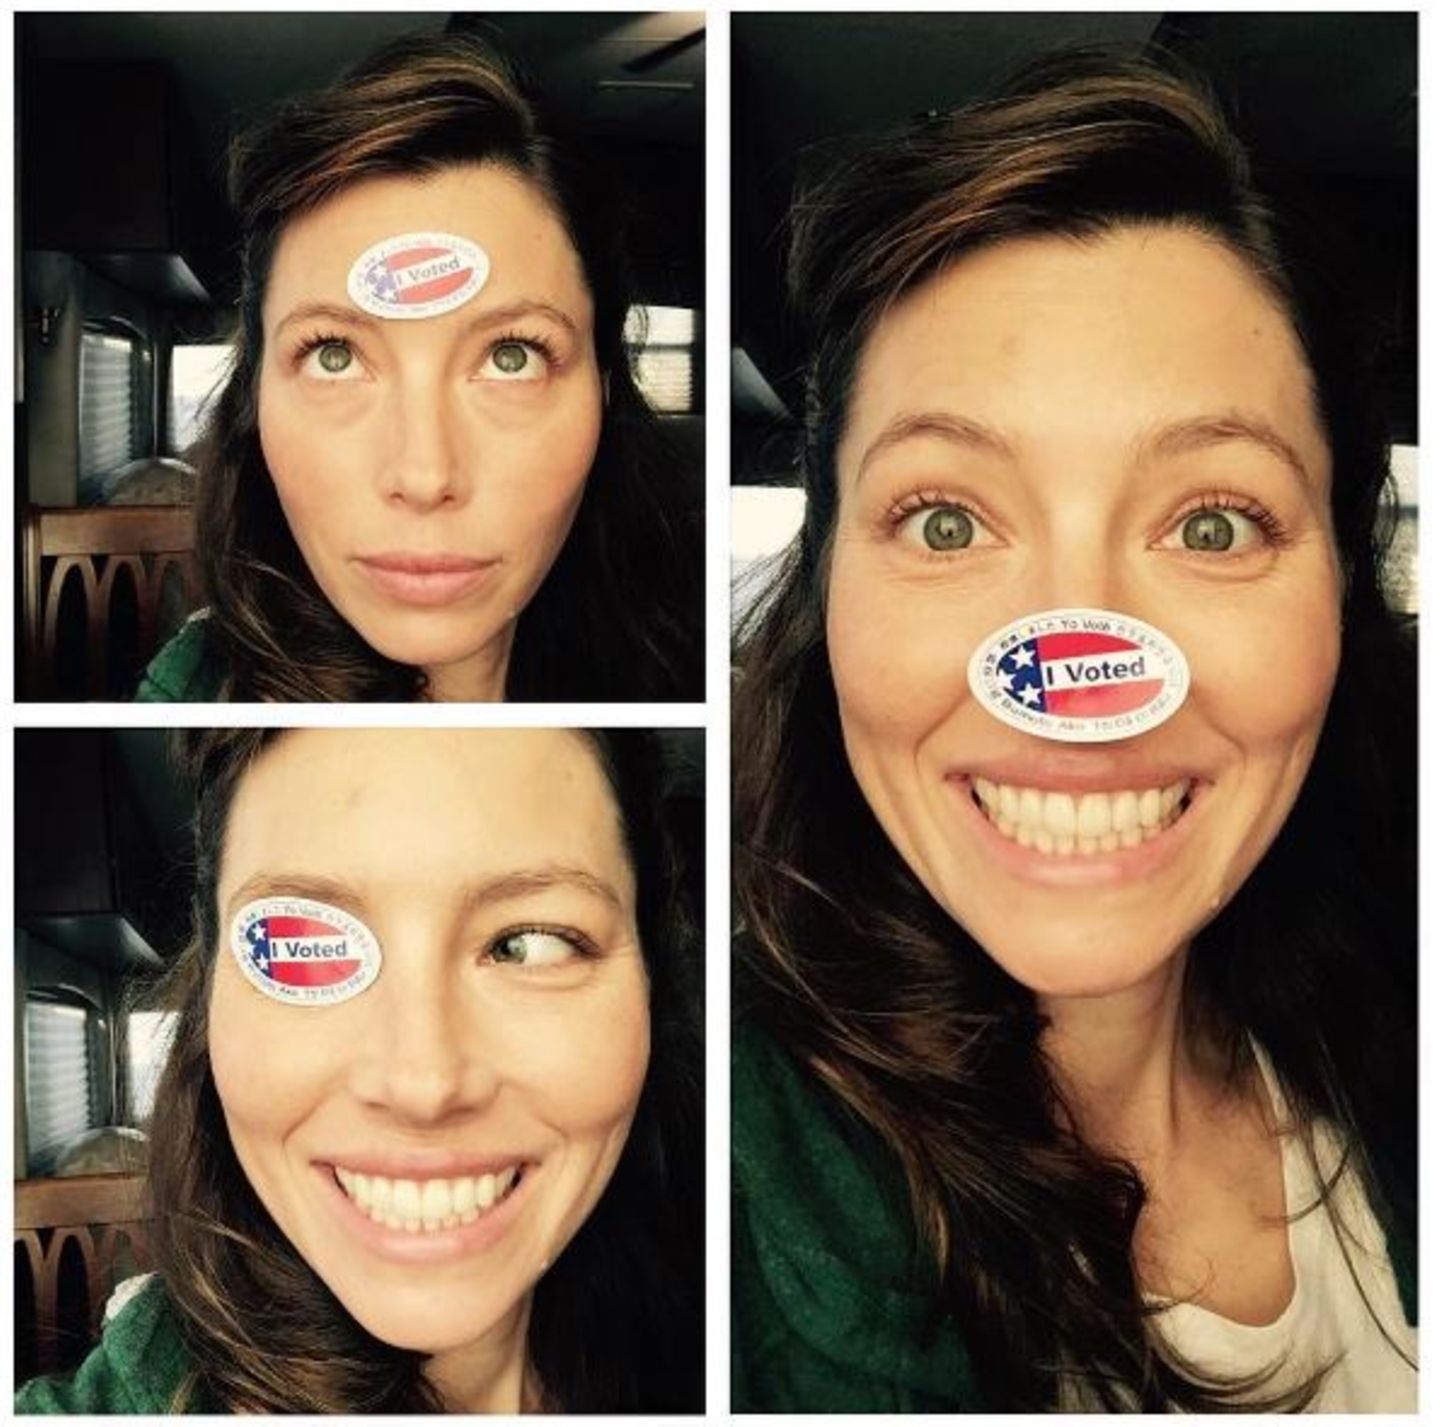 Jessica Biel hat schon vor einer Woche ihre Stimme abgegeben und ein lustiges Shooting mit ihrem Sticker gemacht.